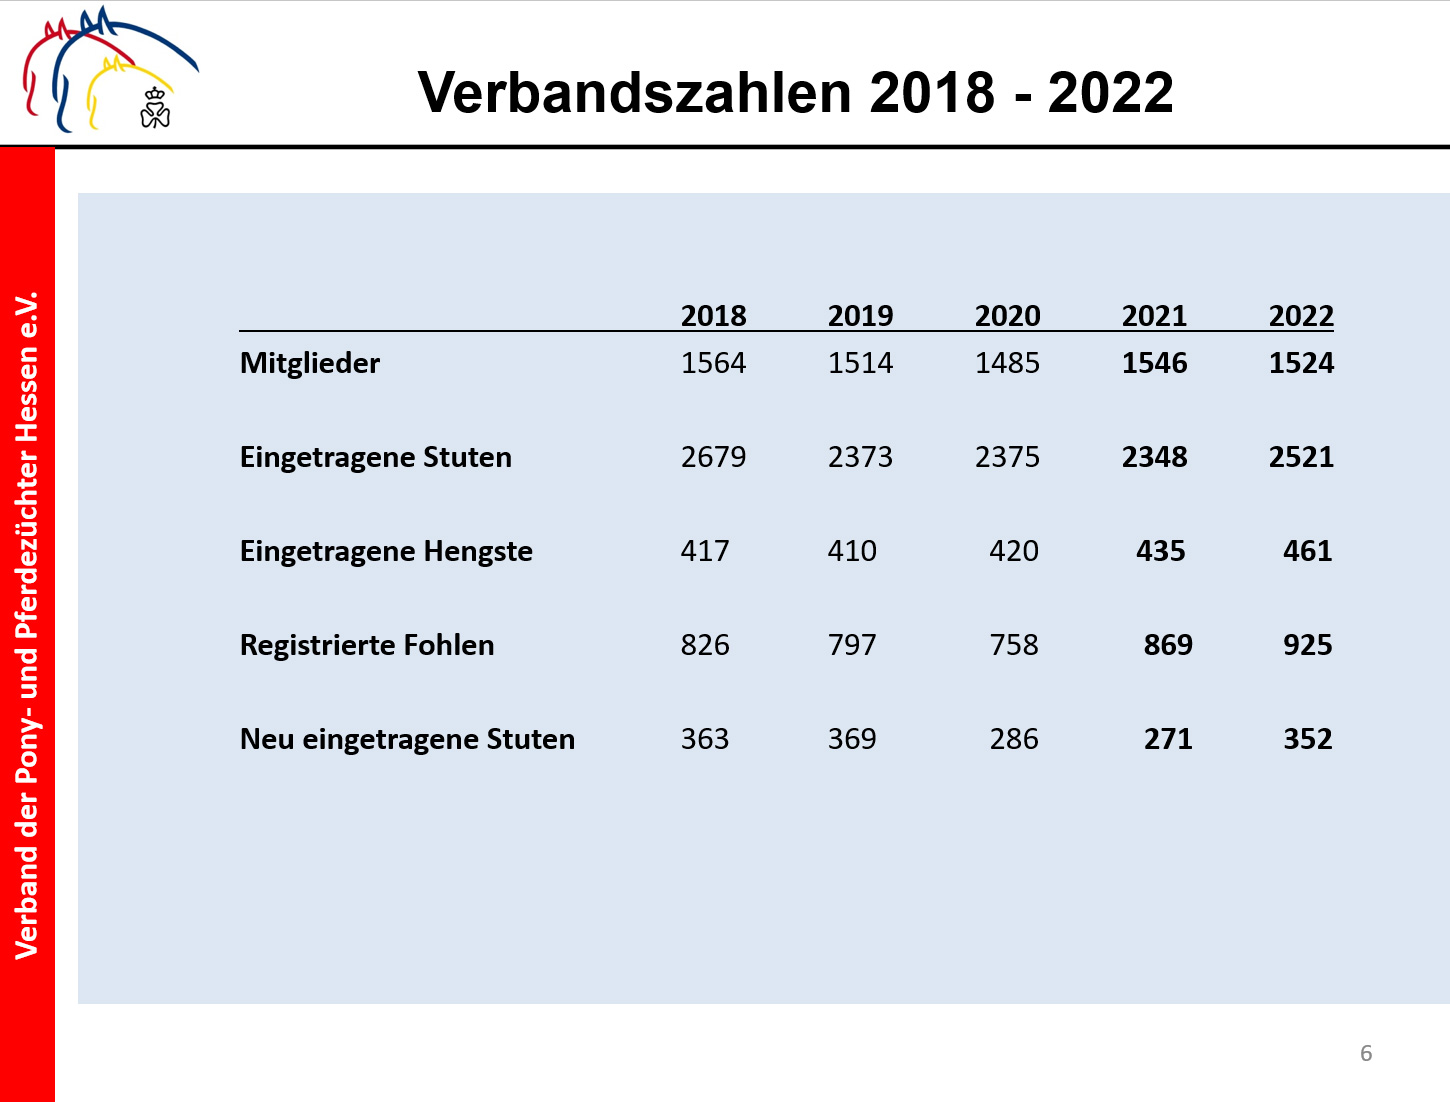 Verbandszahlen 2018 bis 2022